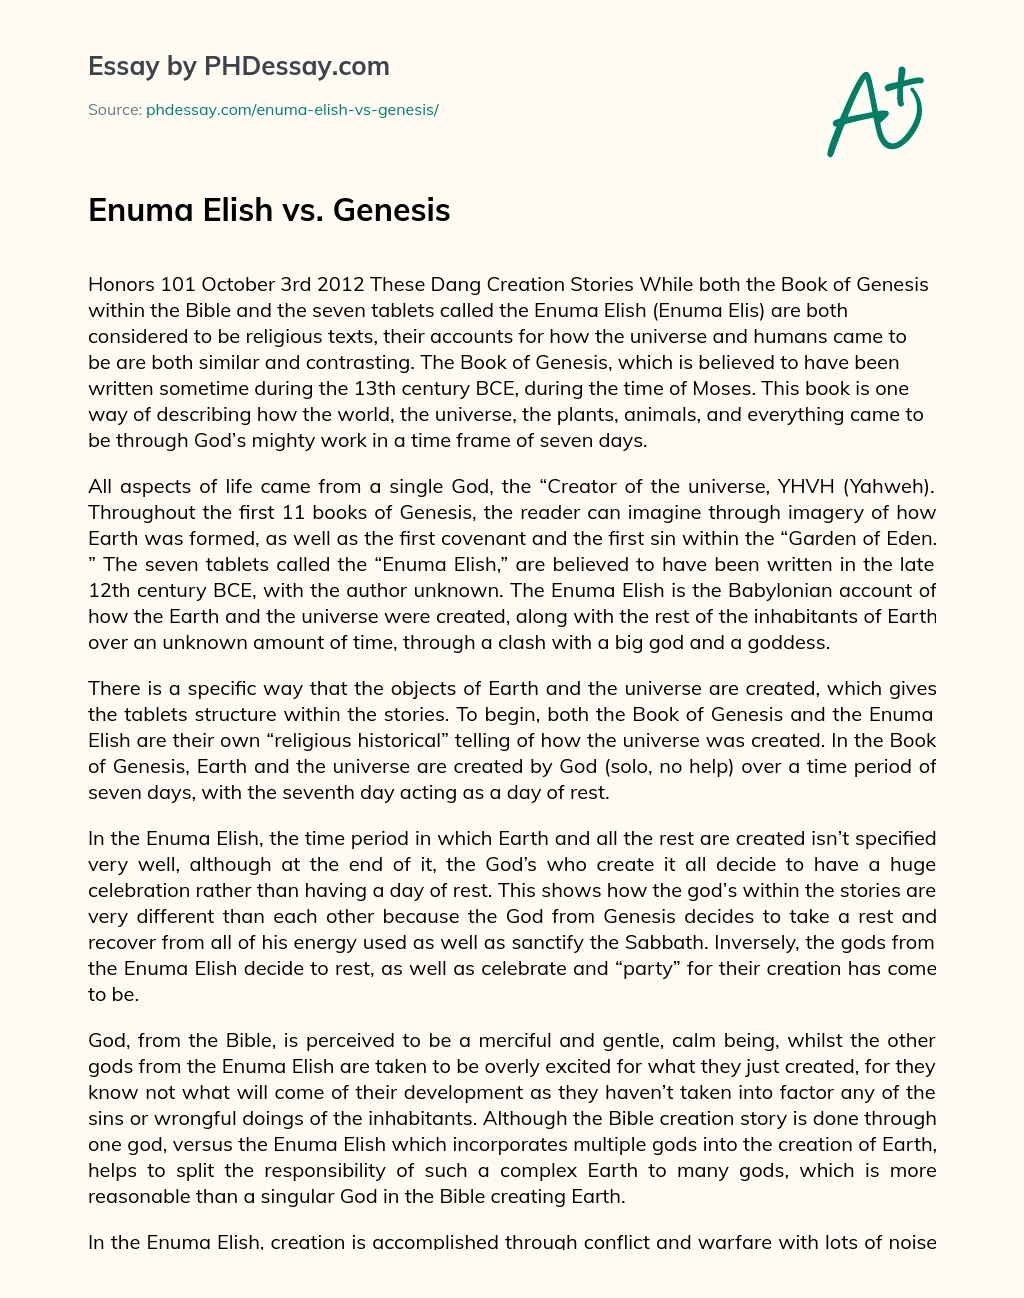 Enuma Elish vs. Genesis essay